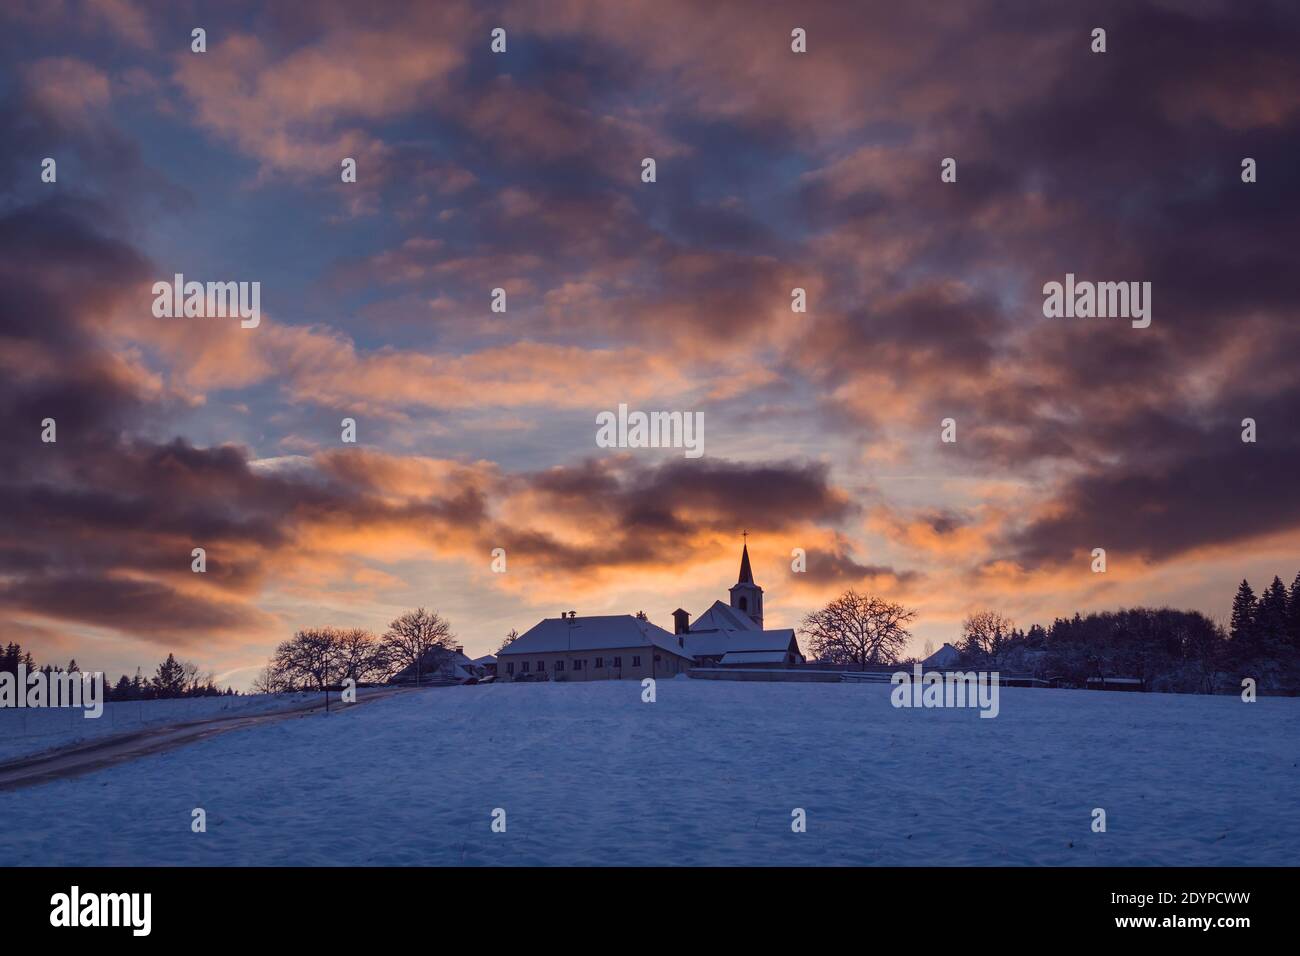 Dorf mit einer Kirche auf einem Hügel bei Sonnenuntergang im Winter, schöner Himmel mit beleuchteten Wolken, Vezovata Flugzeug, Tschechische republik Stockfoto